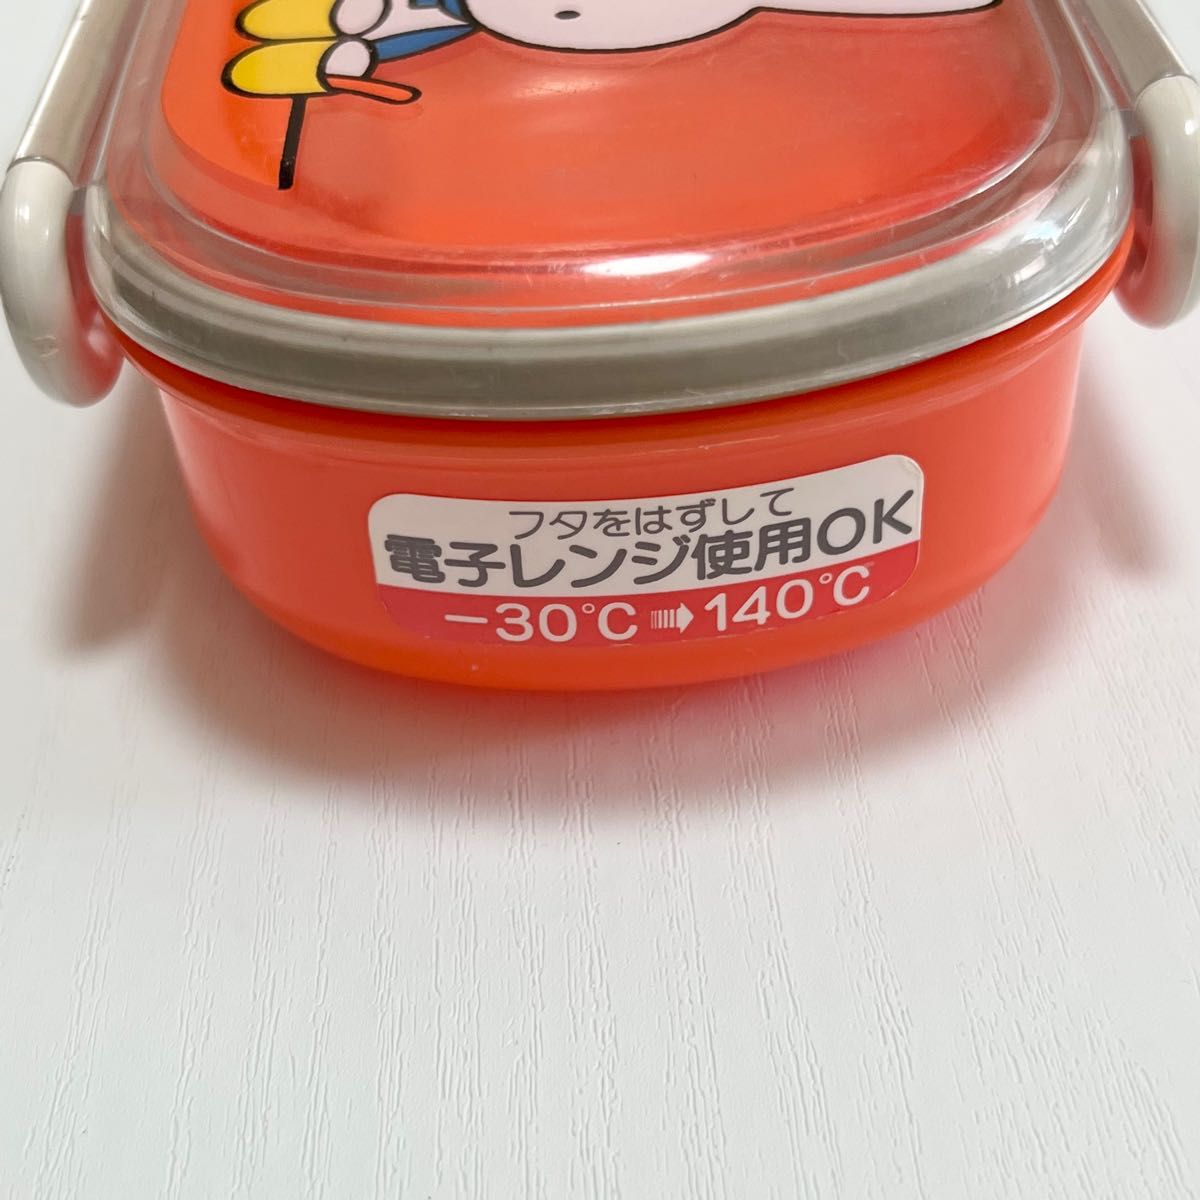 【送料無料】 ミッフィー Miffy ロック式 おべんとう箱 270ml ランチボックス お弁当箱 弁当箱